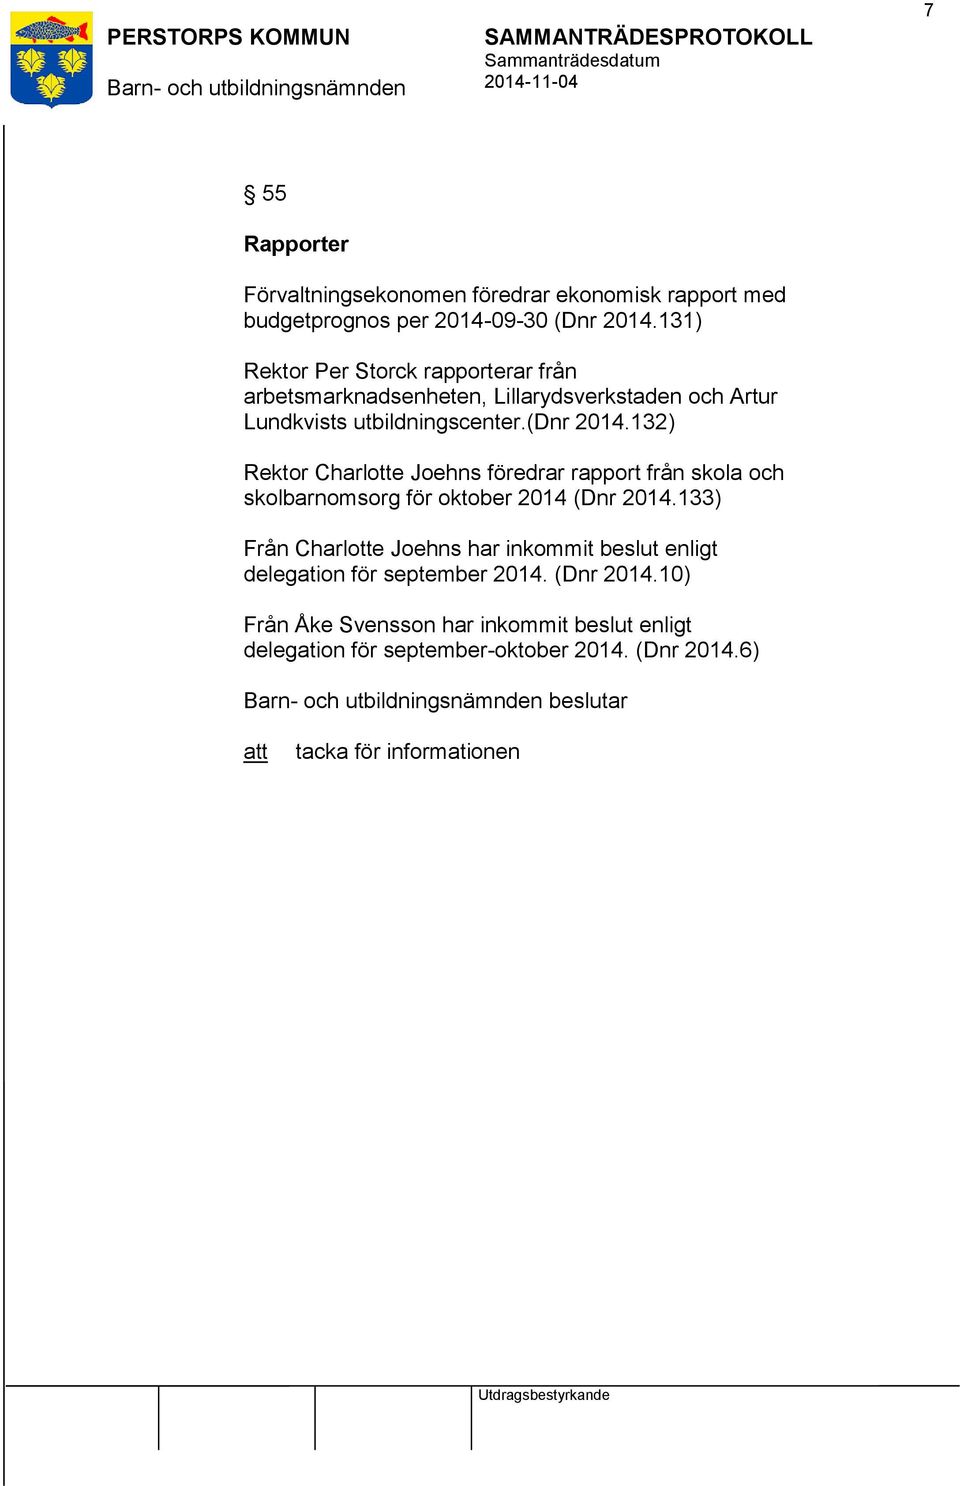 132) Rektor Charlotte Joehns föredrar rapport från skola och skolbarnomsorg för oktober 2014 (Dnr 2014.